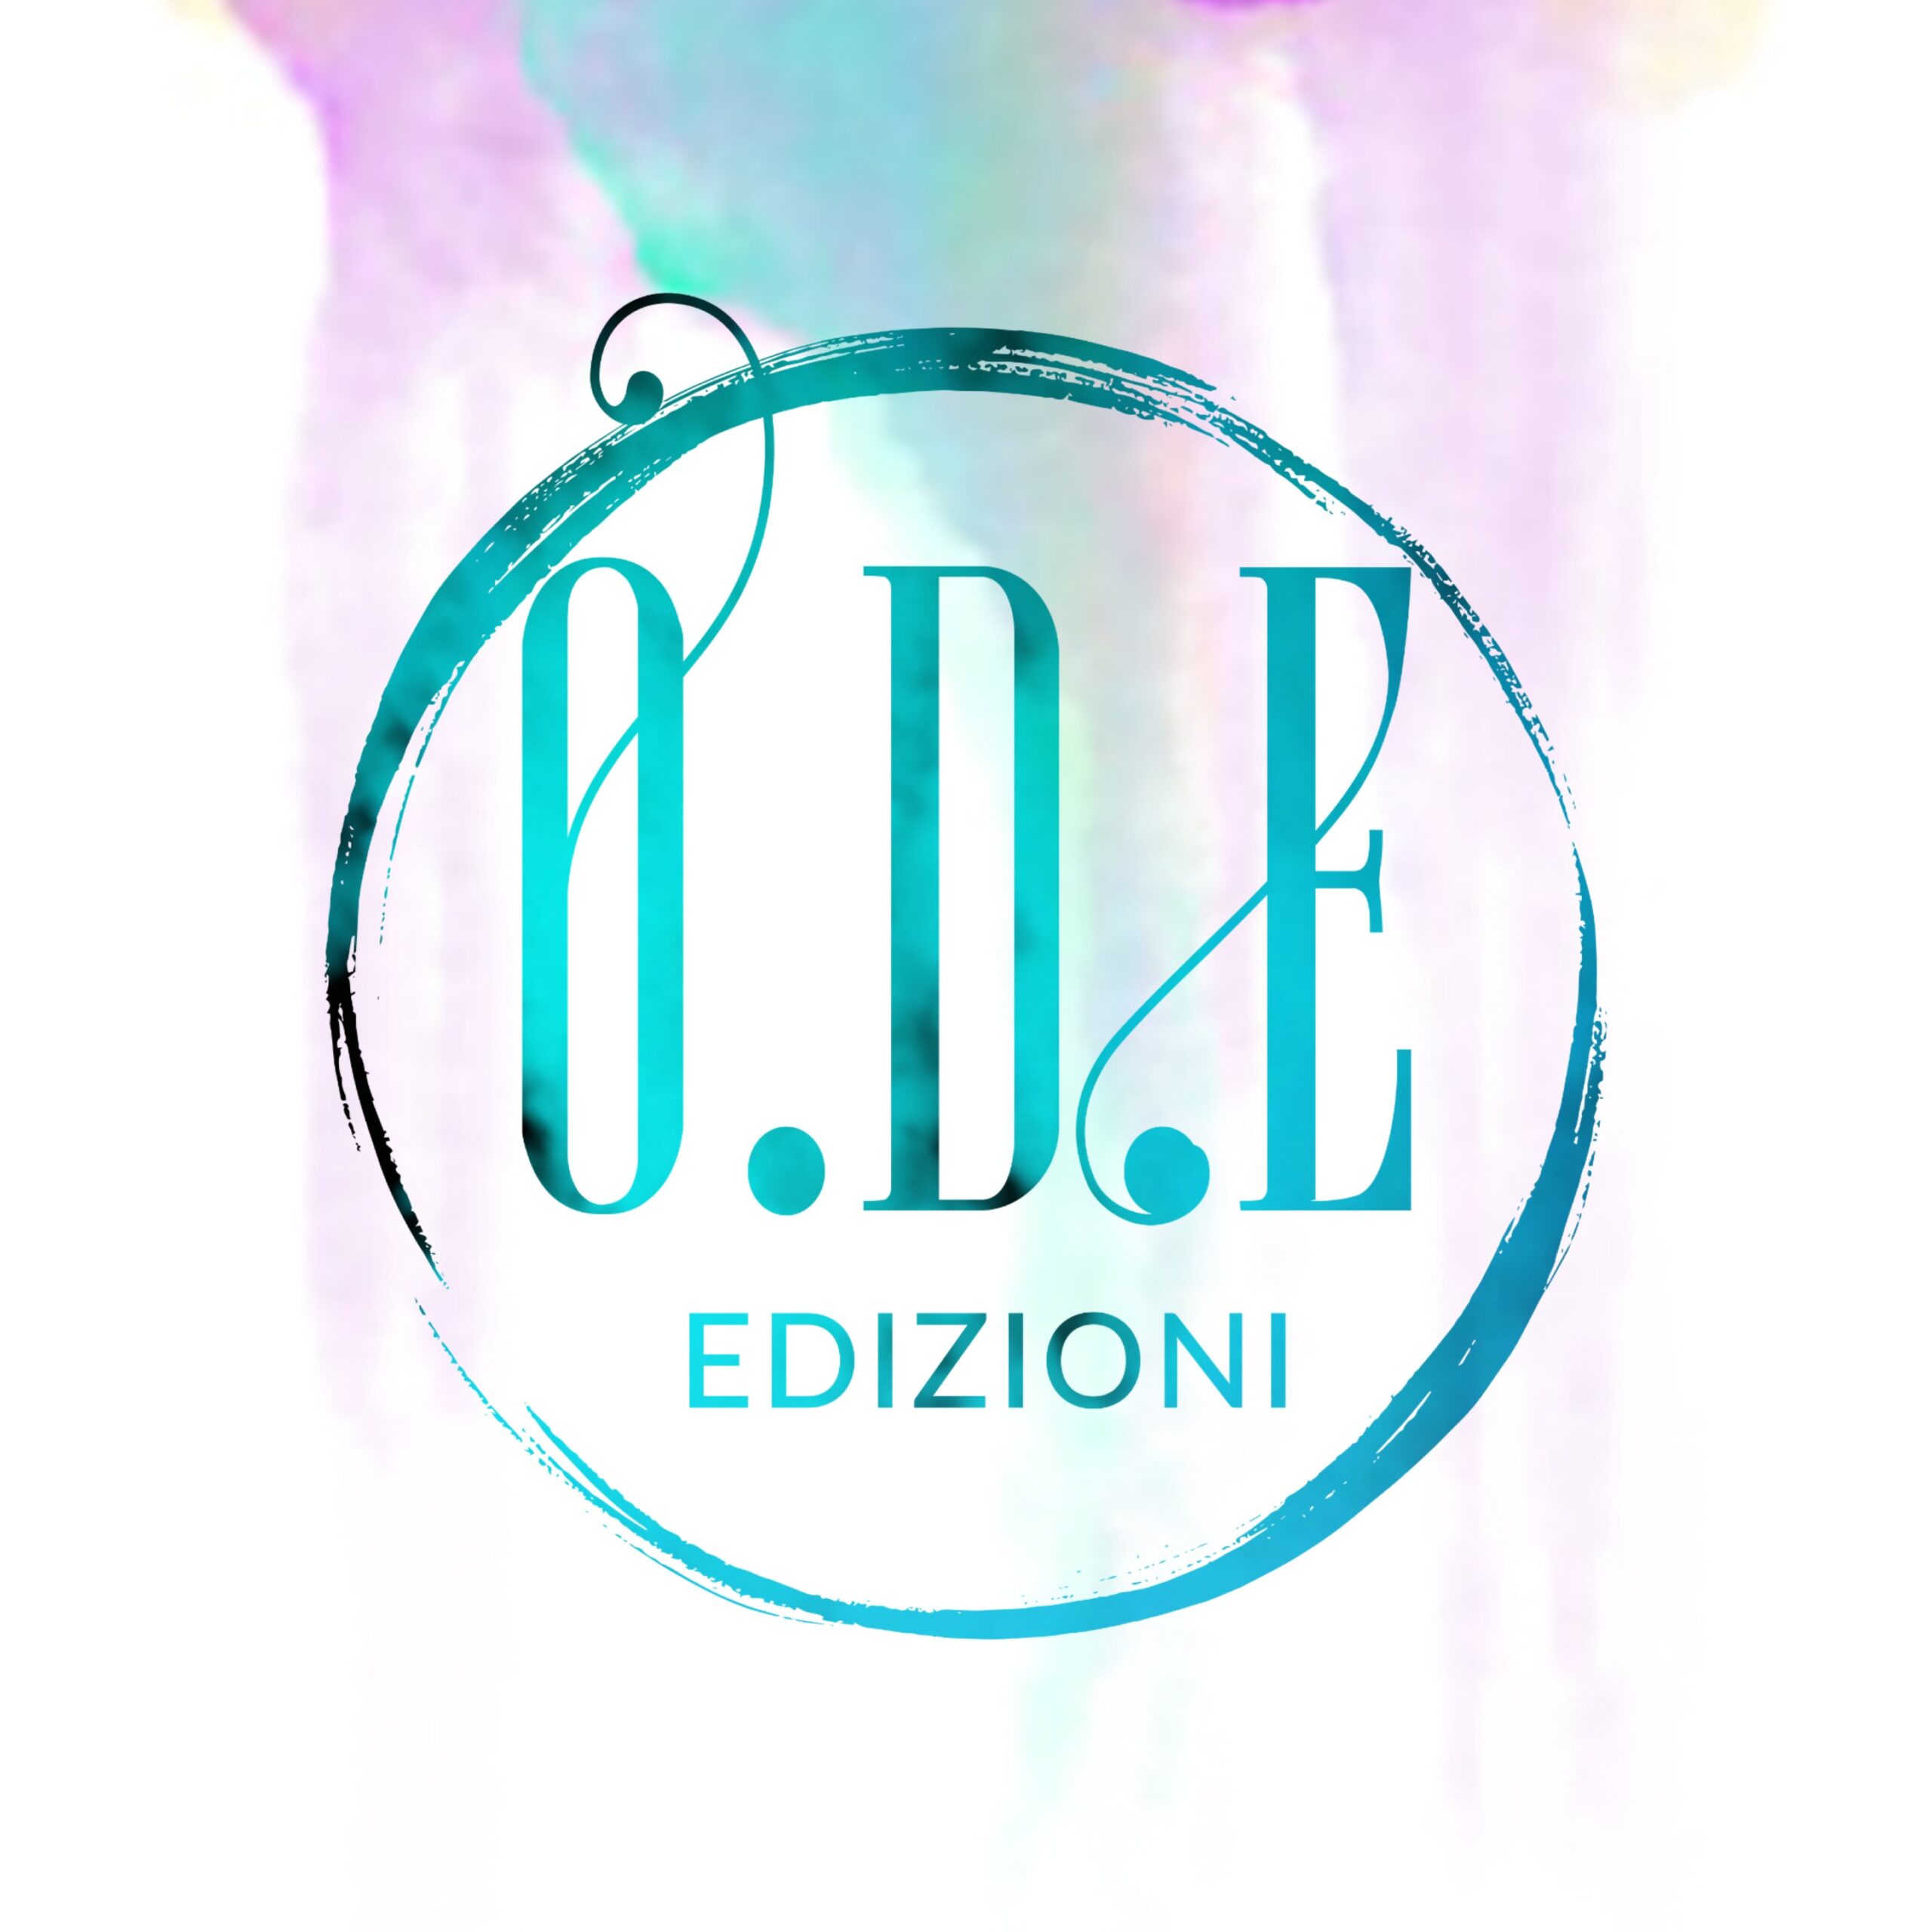 O.D.E. Edizioni